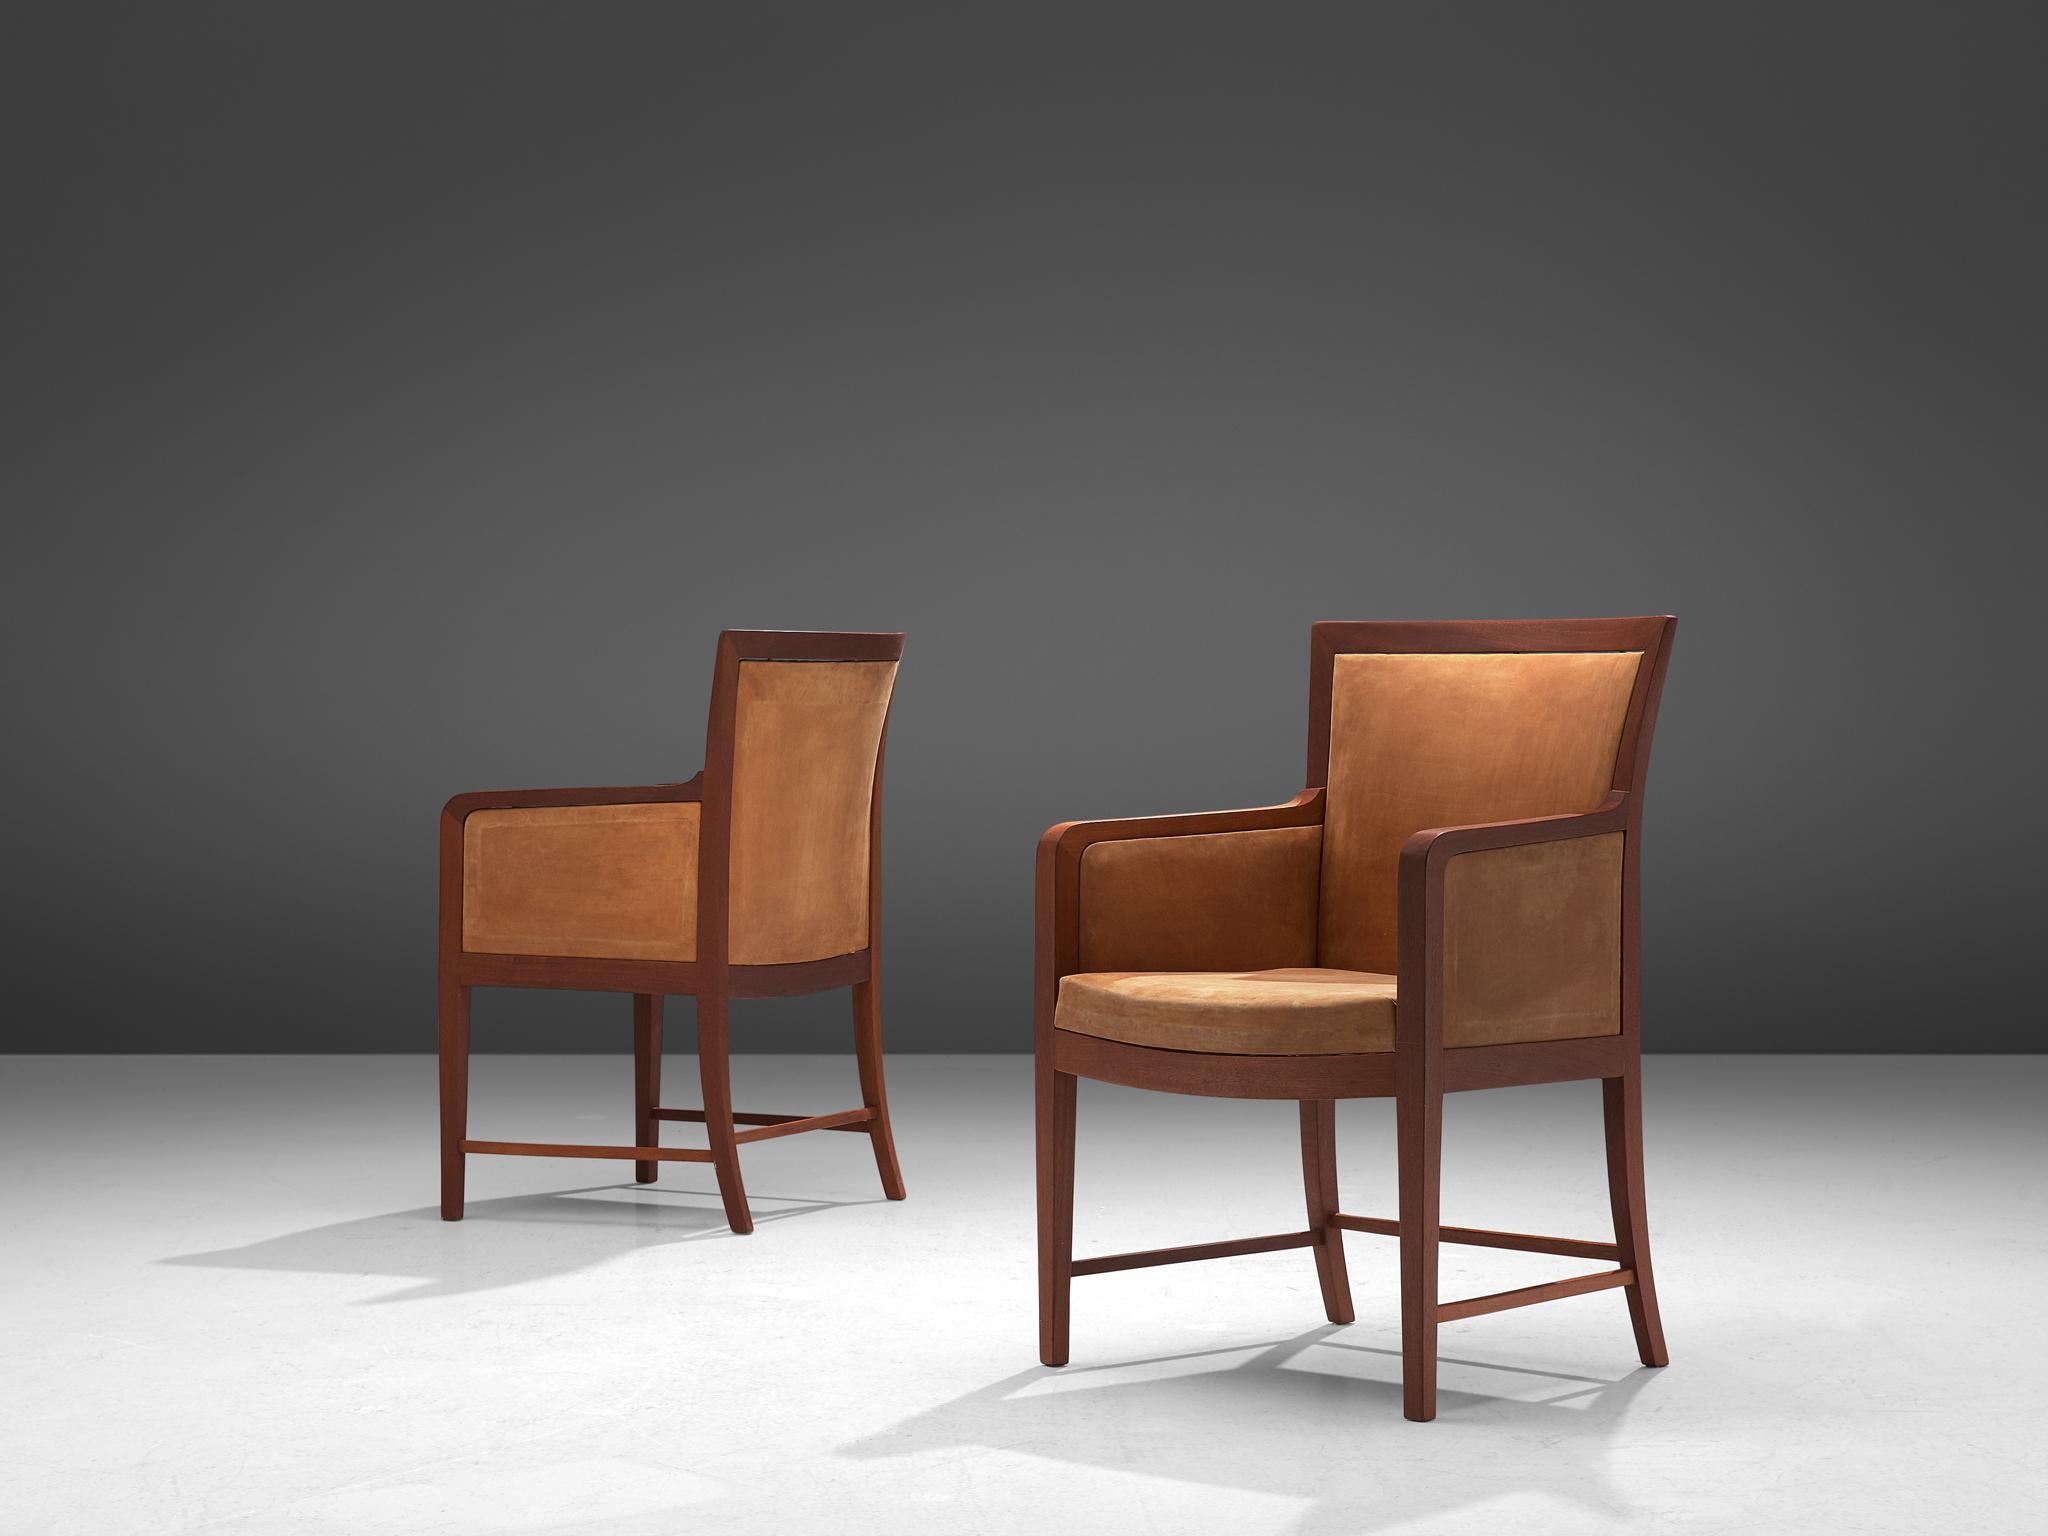 Kaj Gottlob für Rud Rasmussen, Paar Liegestühle, Leder und Mahagoni, Dänemark, 1930er Jahre

Dieses elegante Sessel-Set wurde von Kaj Gottlob entworfen und von Rud Rasmussen gefertigt. Die Stühle zeichnen sich durch ihre Schlichtheit aus und sind